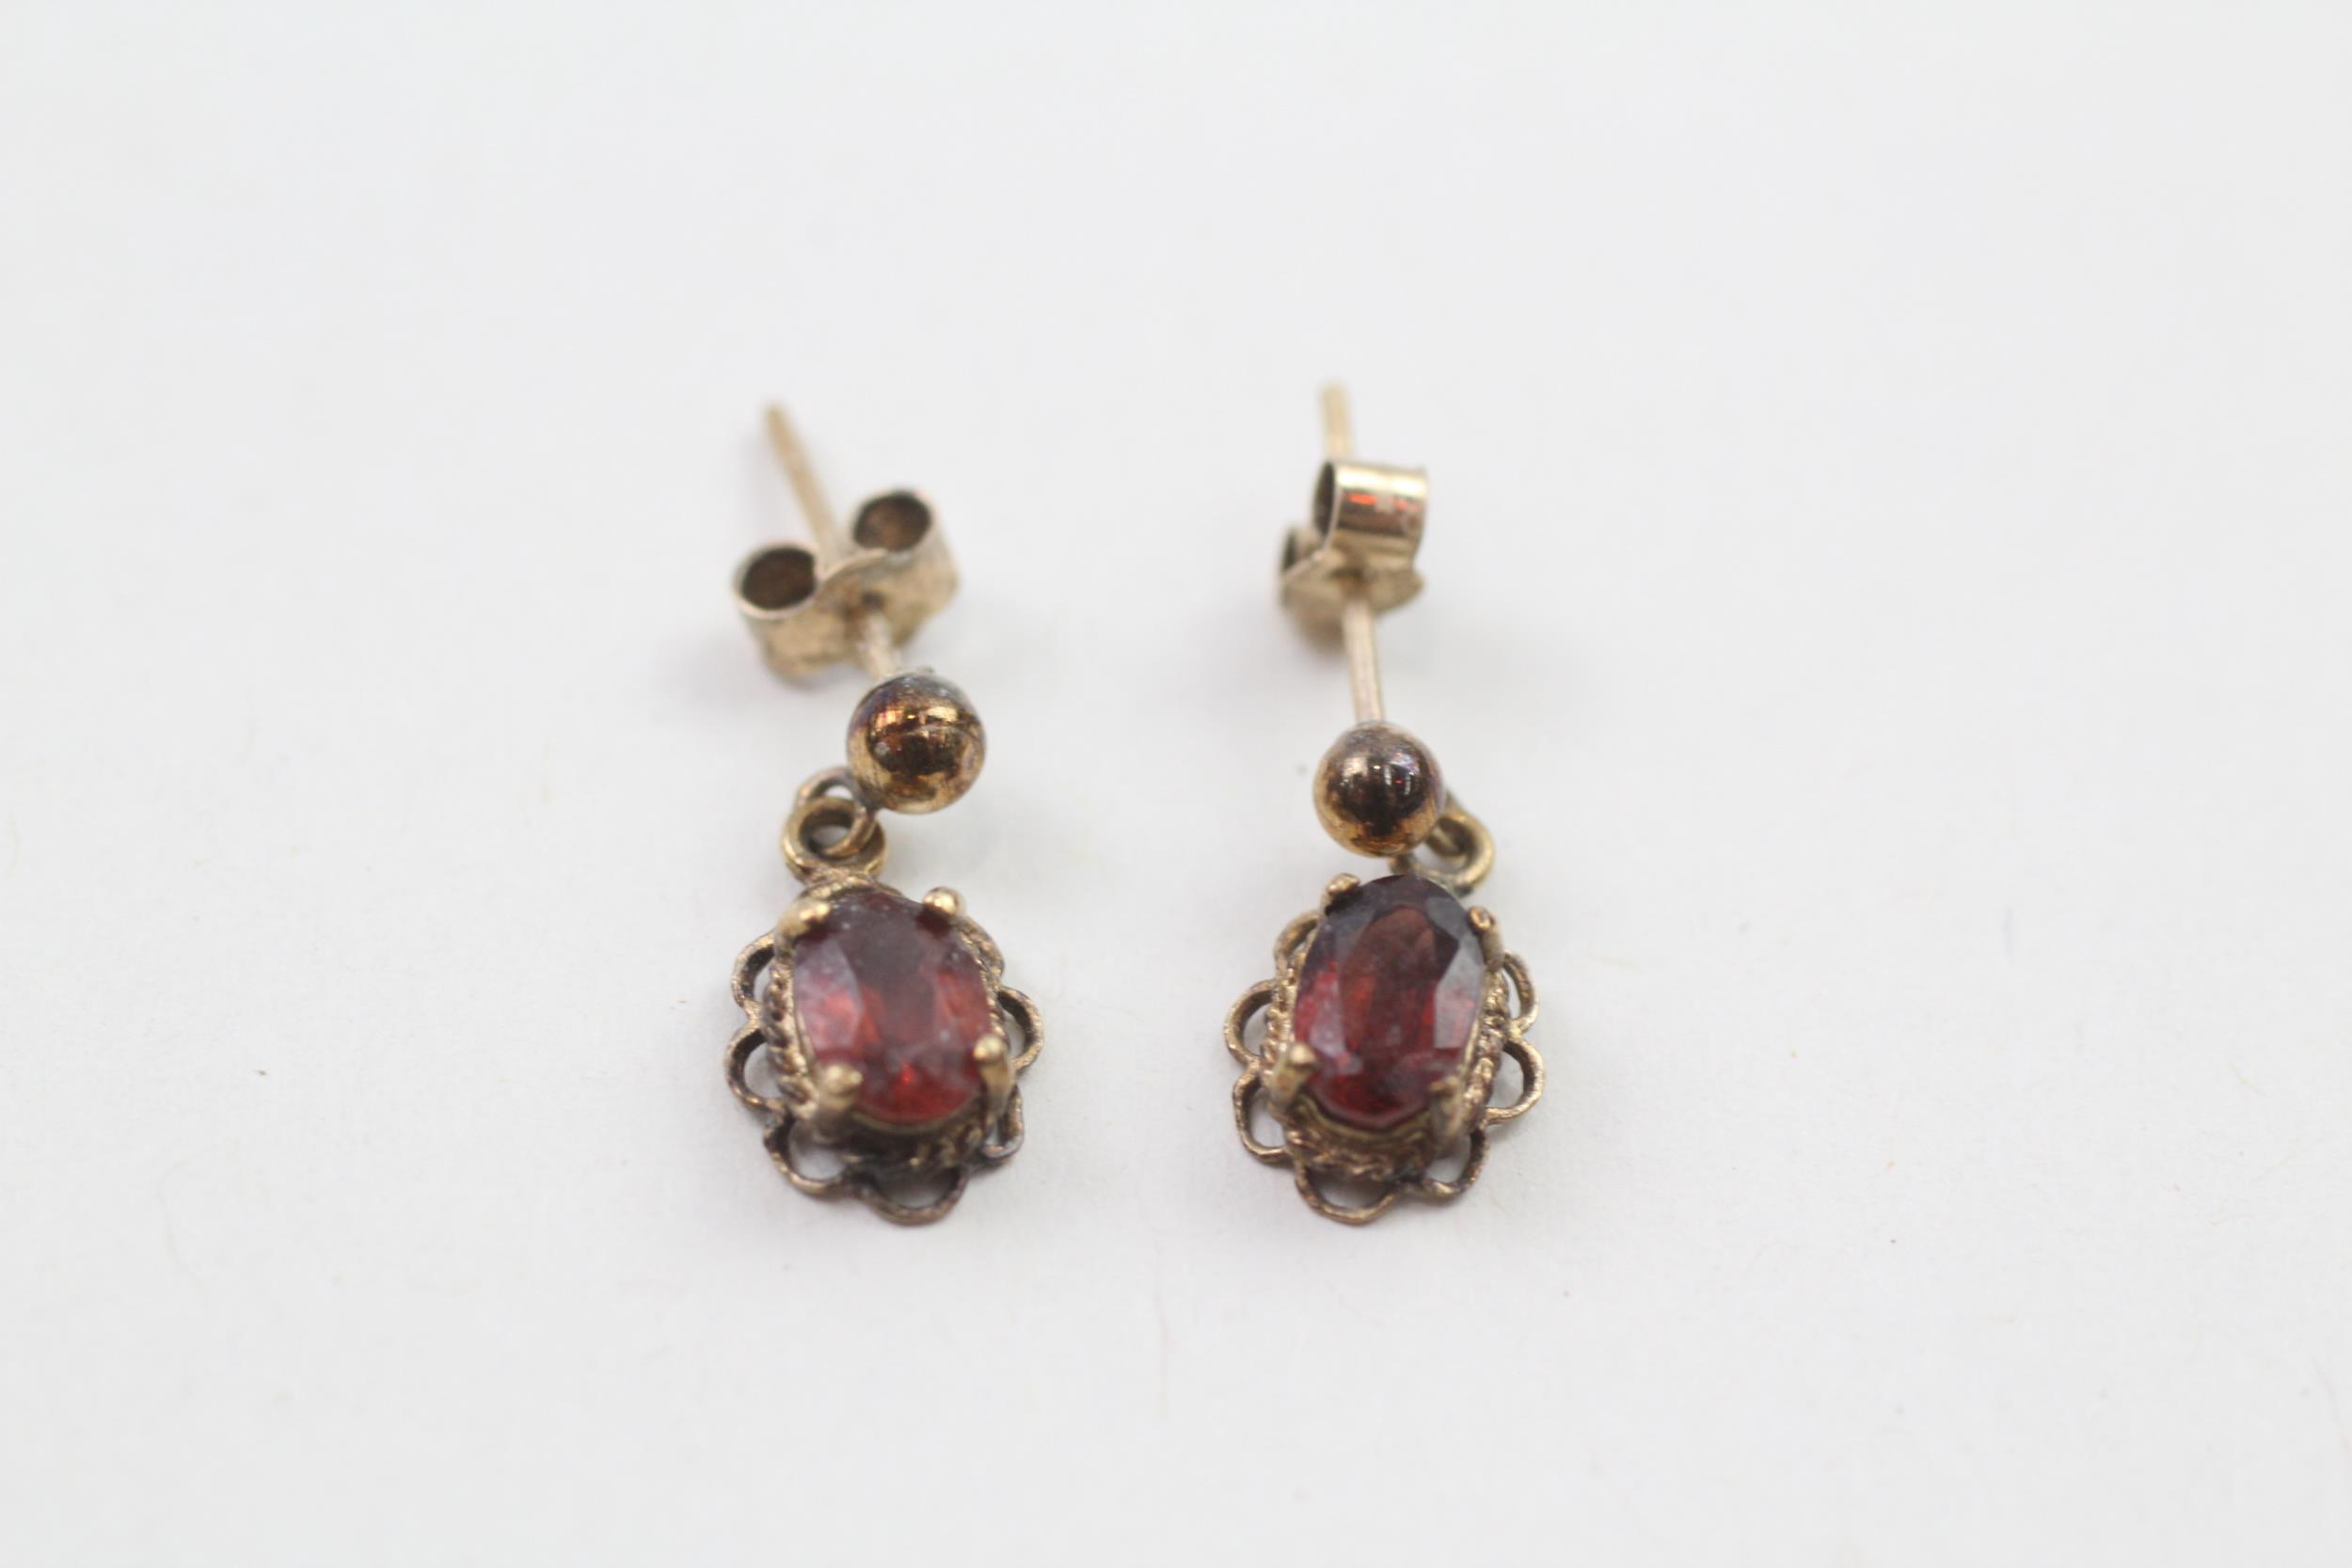 9ct gold oval cut garnet drop earrings (1.1g)